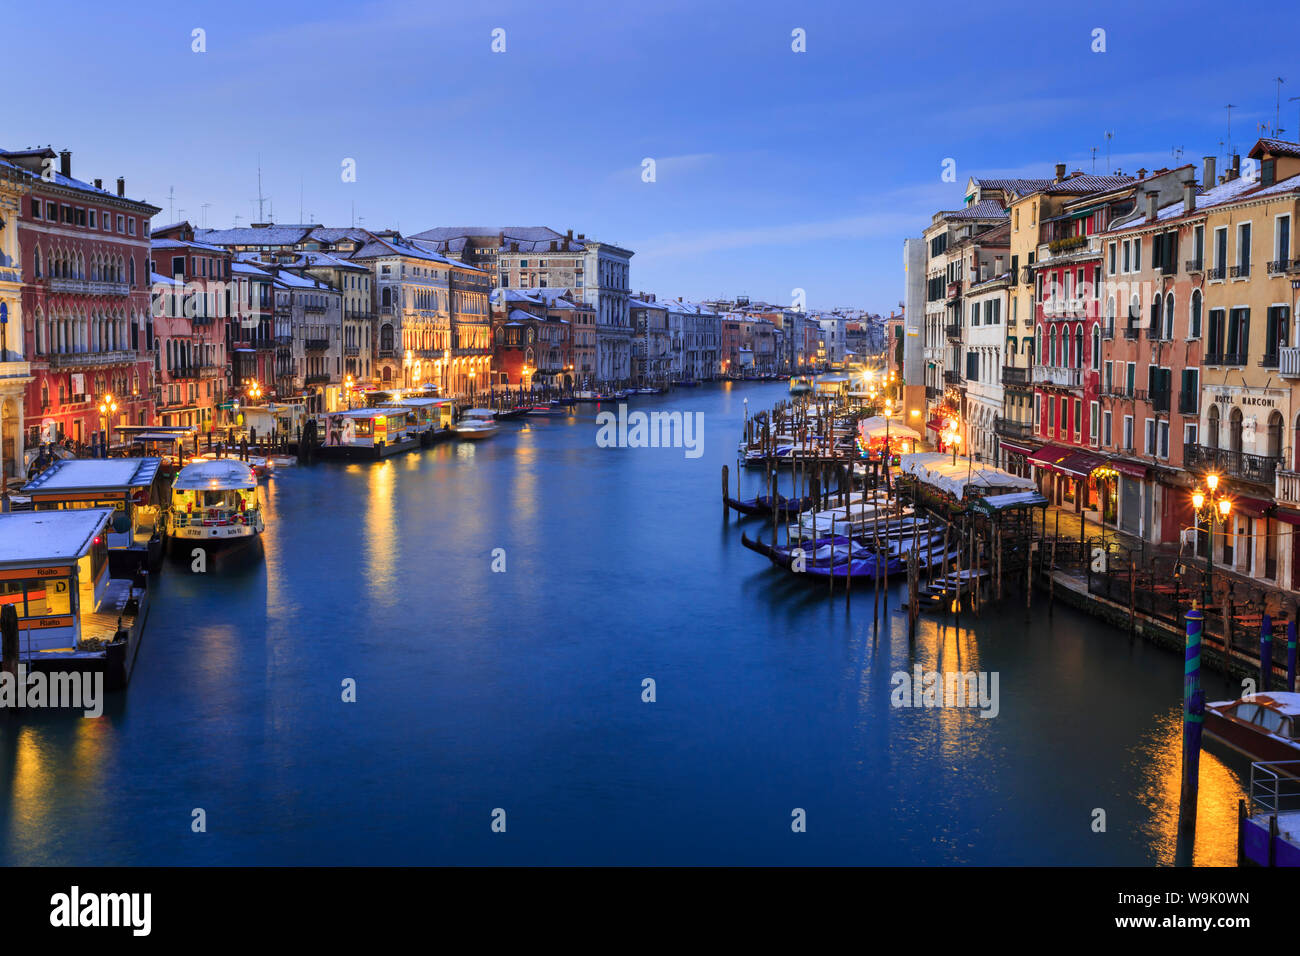 Canal Grande dal Ponte di Rialto dopo una notte di neve, alba ora blu, Venezia, Sito Patrimonio Mondiale dell'UNESCO, Veneto, Italia, Europa Foto Stock